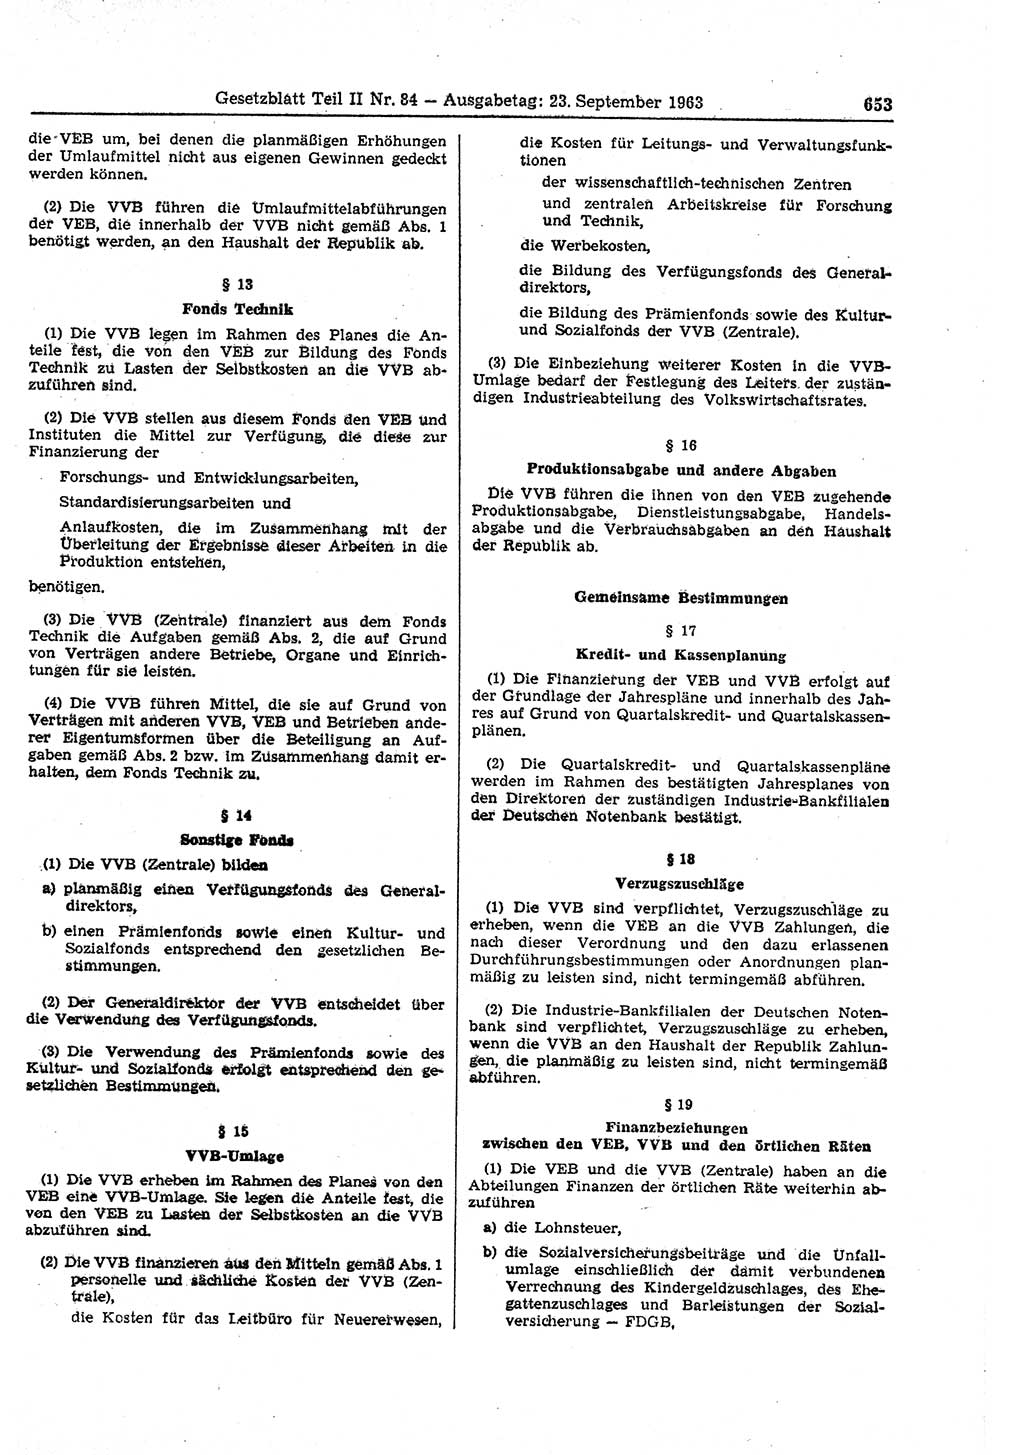 Gesetzblatt (GBl.) der Deutschen Demokratischen Republik (DDR) Teil ⅠⅠ 1963, Seite 653 (GBl. DDR ⅠⅠ 1963, S. 653)